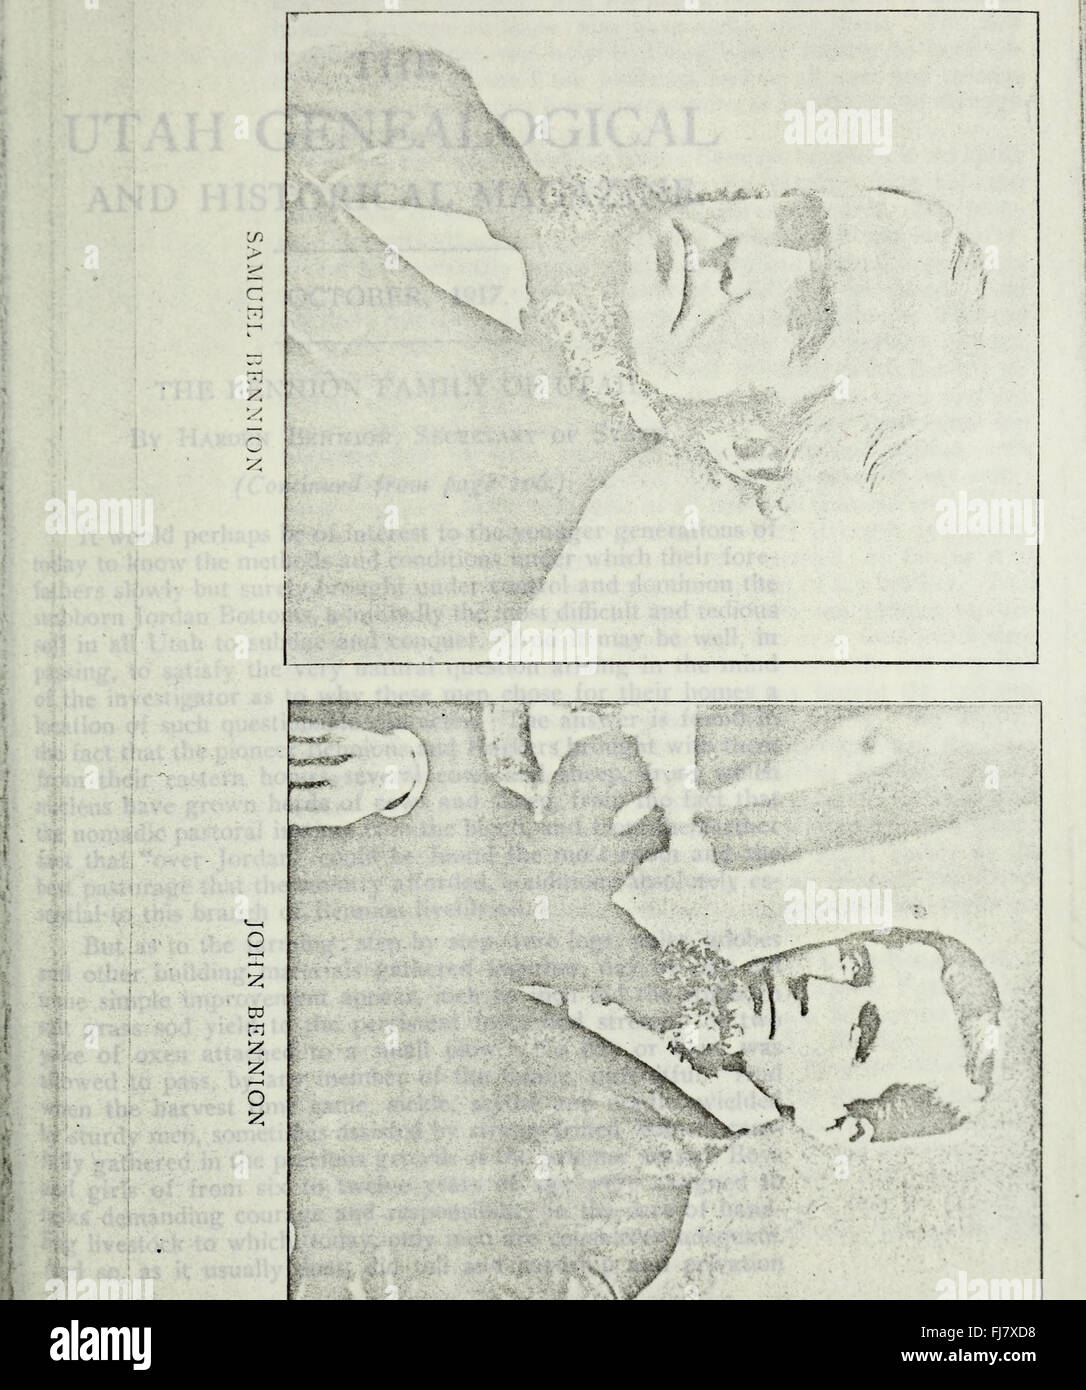 The Utah genealogical and historical magazine (1917) Stock Photo